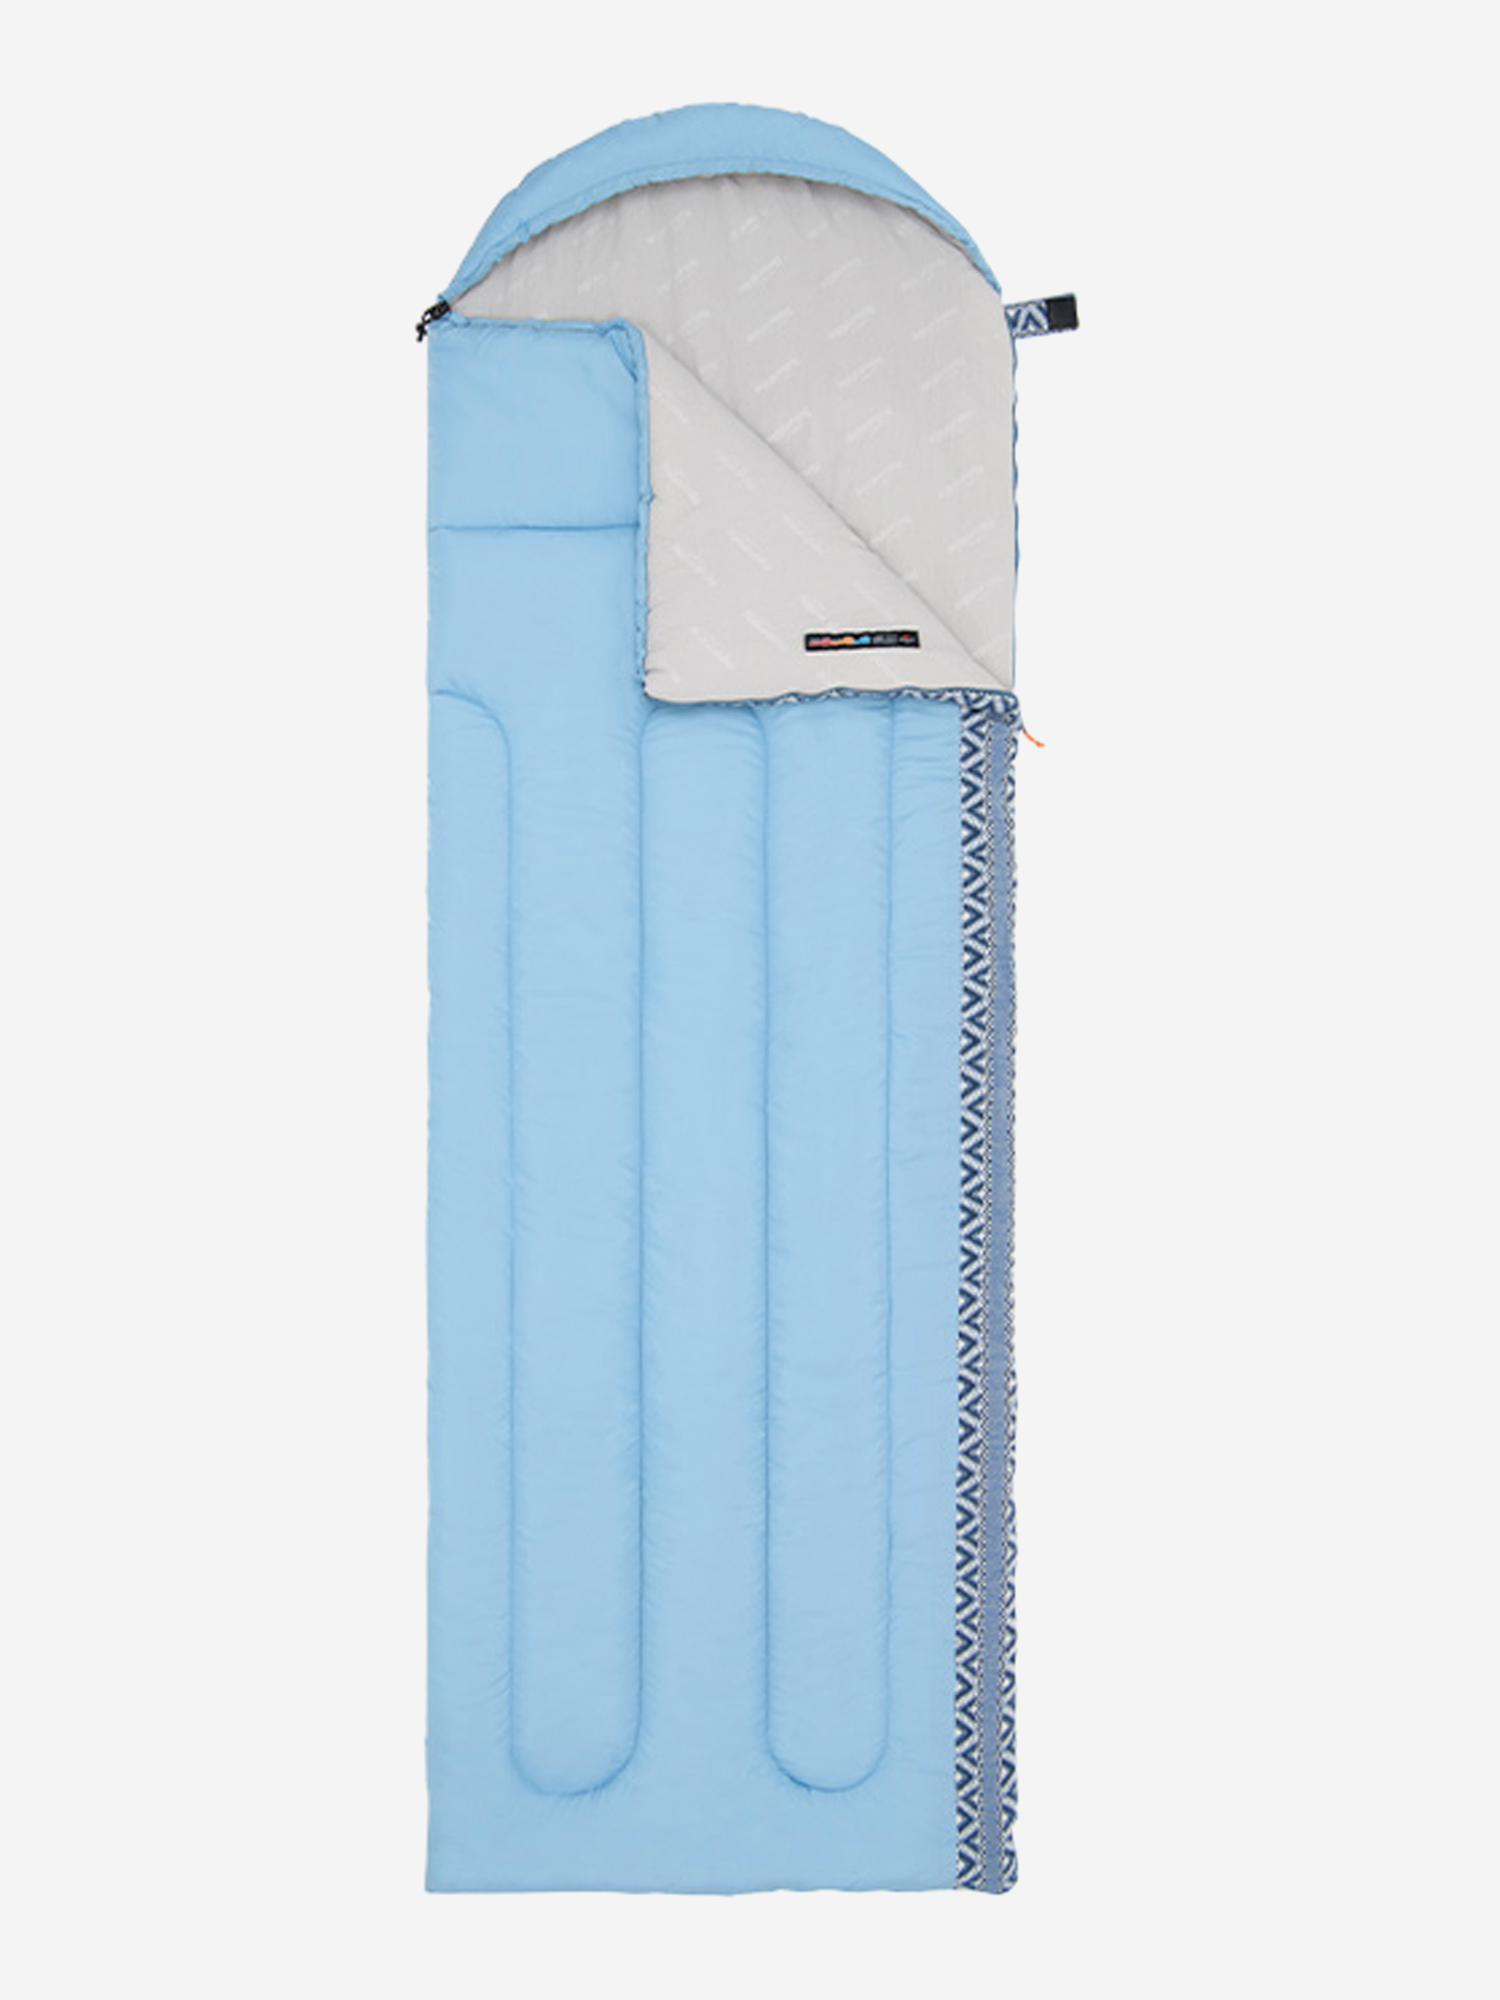 Мешок спальный Naturehike Envelope Down L350, (190+30)х75 см, (правый), (ТК: +3C), голубой, Голубой мешок спальный naturehike ultralight cw400 l 220х85 см правый тк 5c